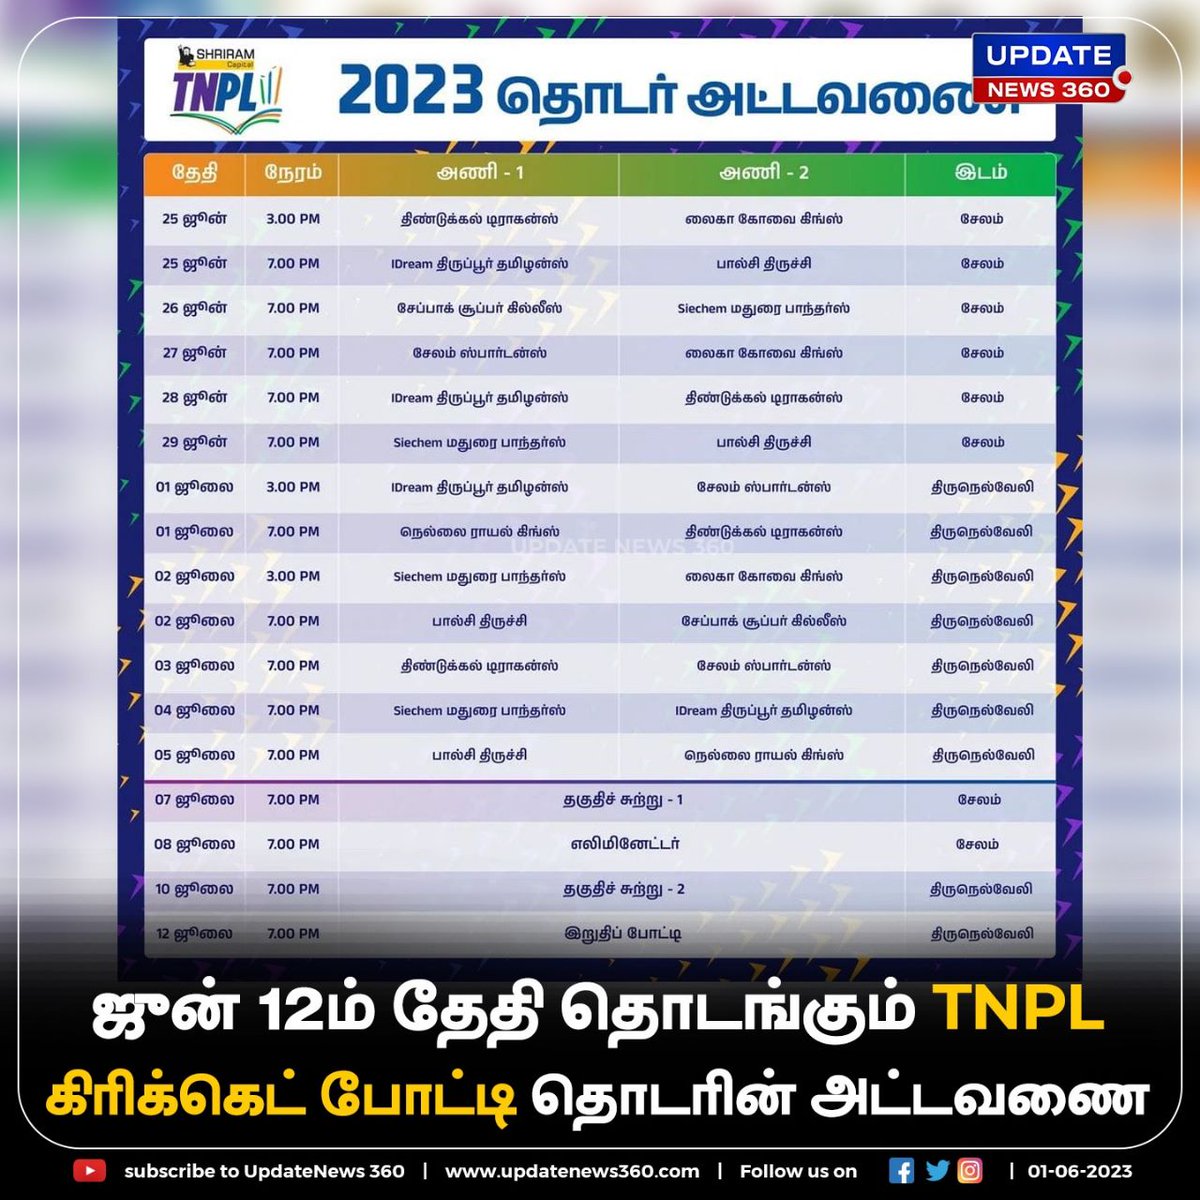 கோவையில் தொடங்கும் TNPL கிரிக்கெட் தொடர் ; போட்டிக்கான அட்டவணை இதோ….!!

#UpdateNews | #TNPL | #TamilNaduCricket | #Cricket | #Coimbatore | #TamilNews | #UpdateNews360